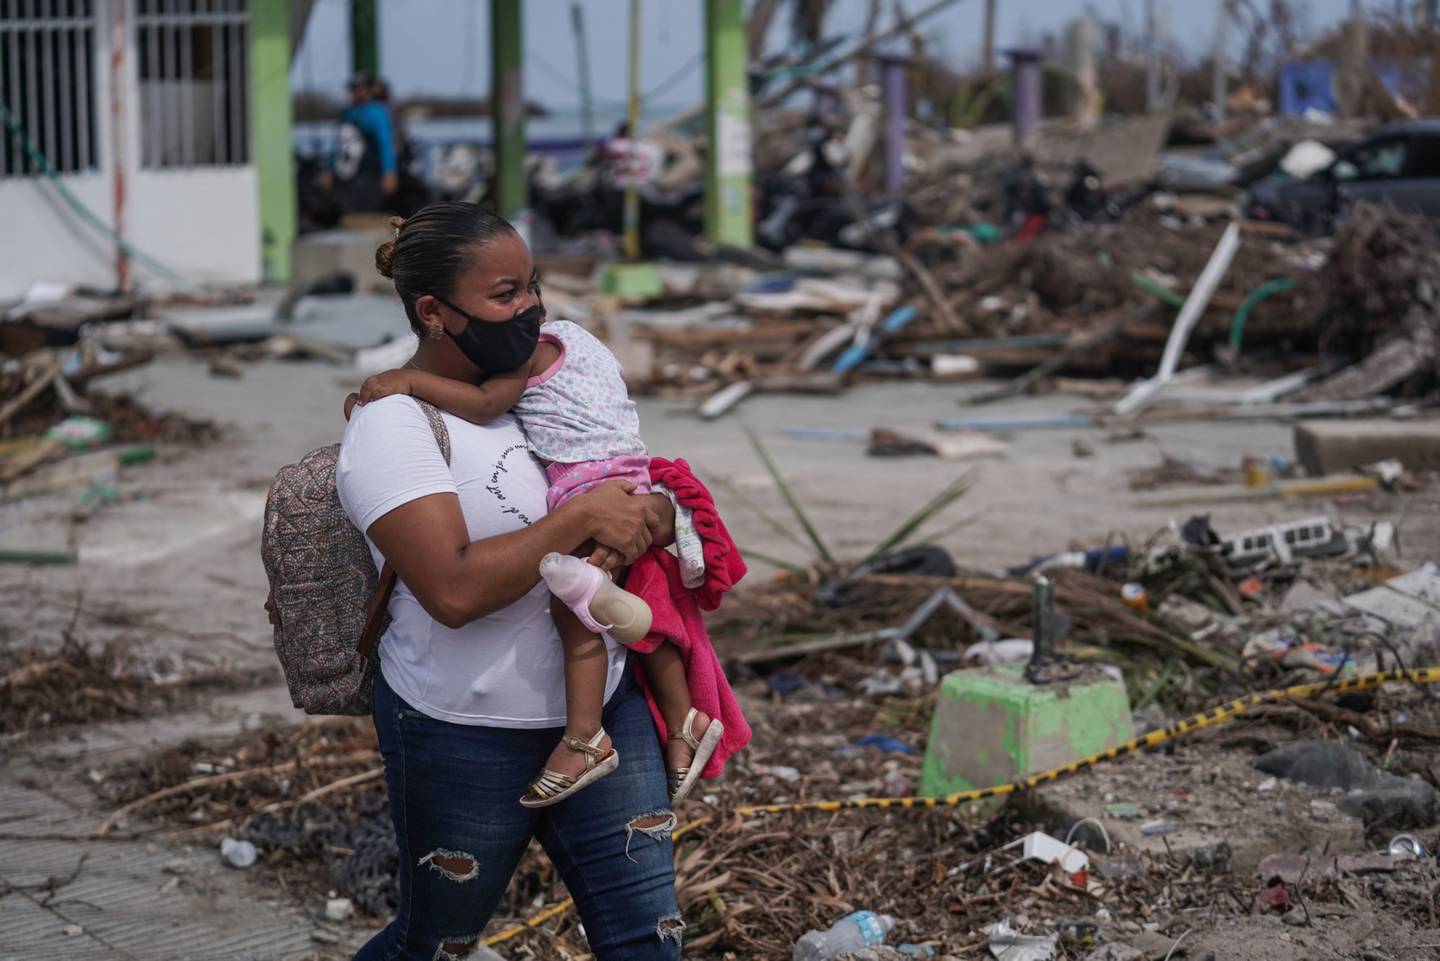 Mientras combatía la pandemia, la región también fue golpeada por los huracanes Eta e Iota, dos recordatorios de la vulnerabilidad al cambio climático, señaló un análisis del FMI.